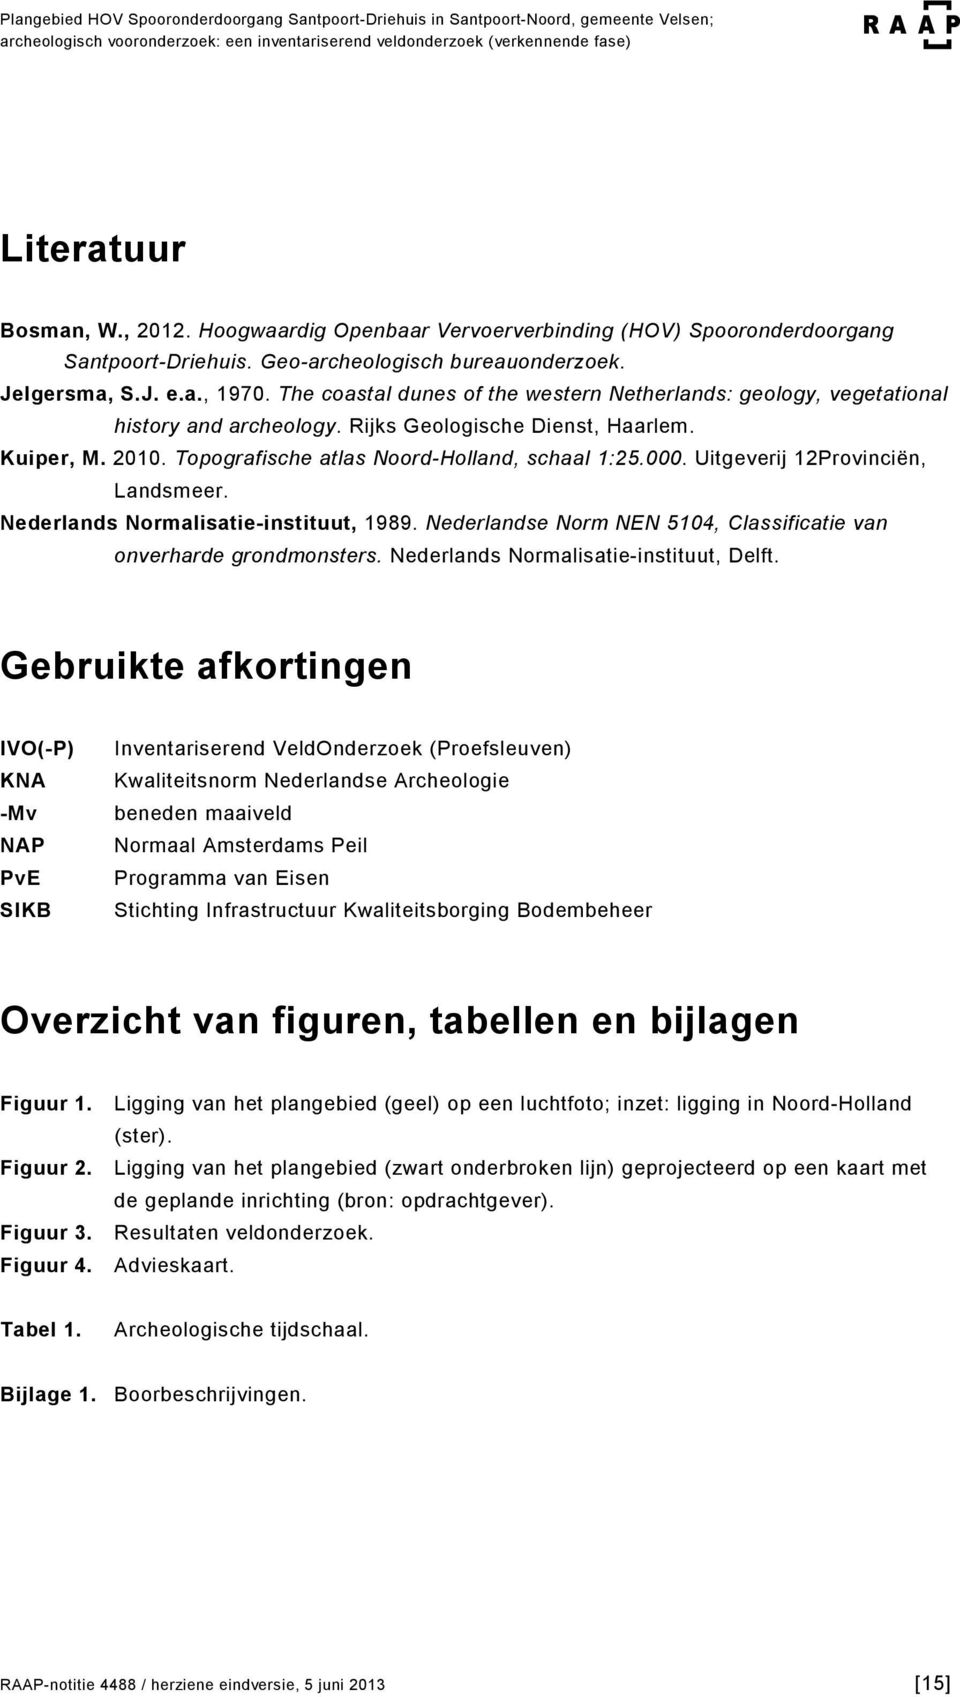 Uitgeverij 12Provinciën, Landsmeer. Nederlands Normalisatie-instituut, 1989. Nederlandse Norm NEN 5104, Classificatie van onverharde grondmonsters. Nederlands Normalisatie-instituut, Delft.